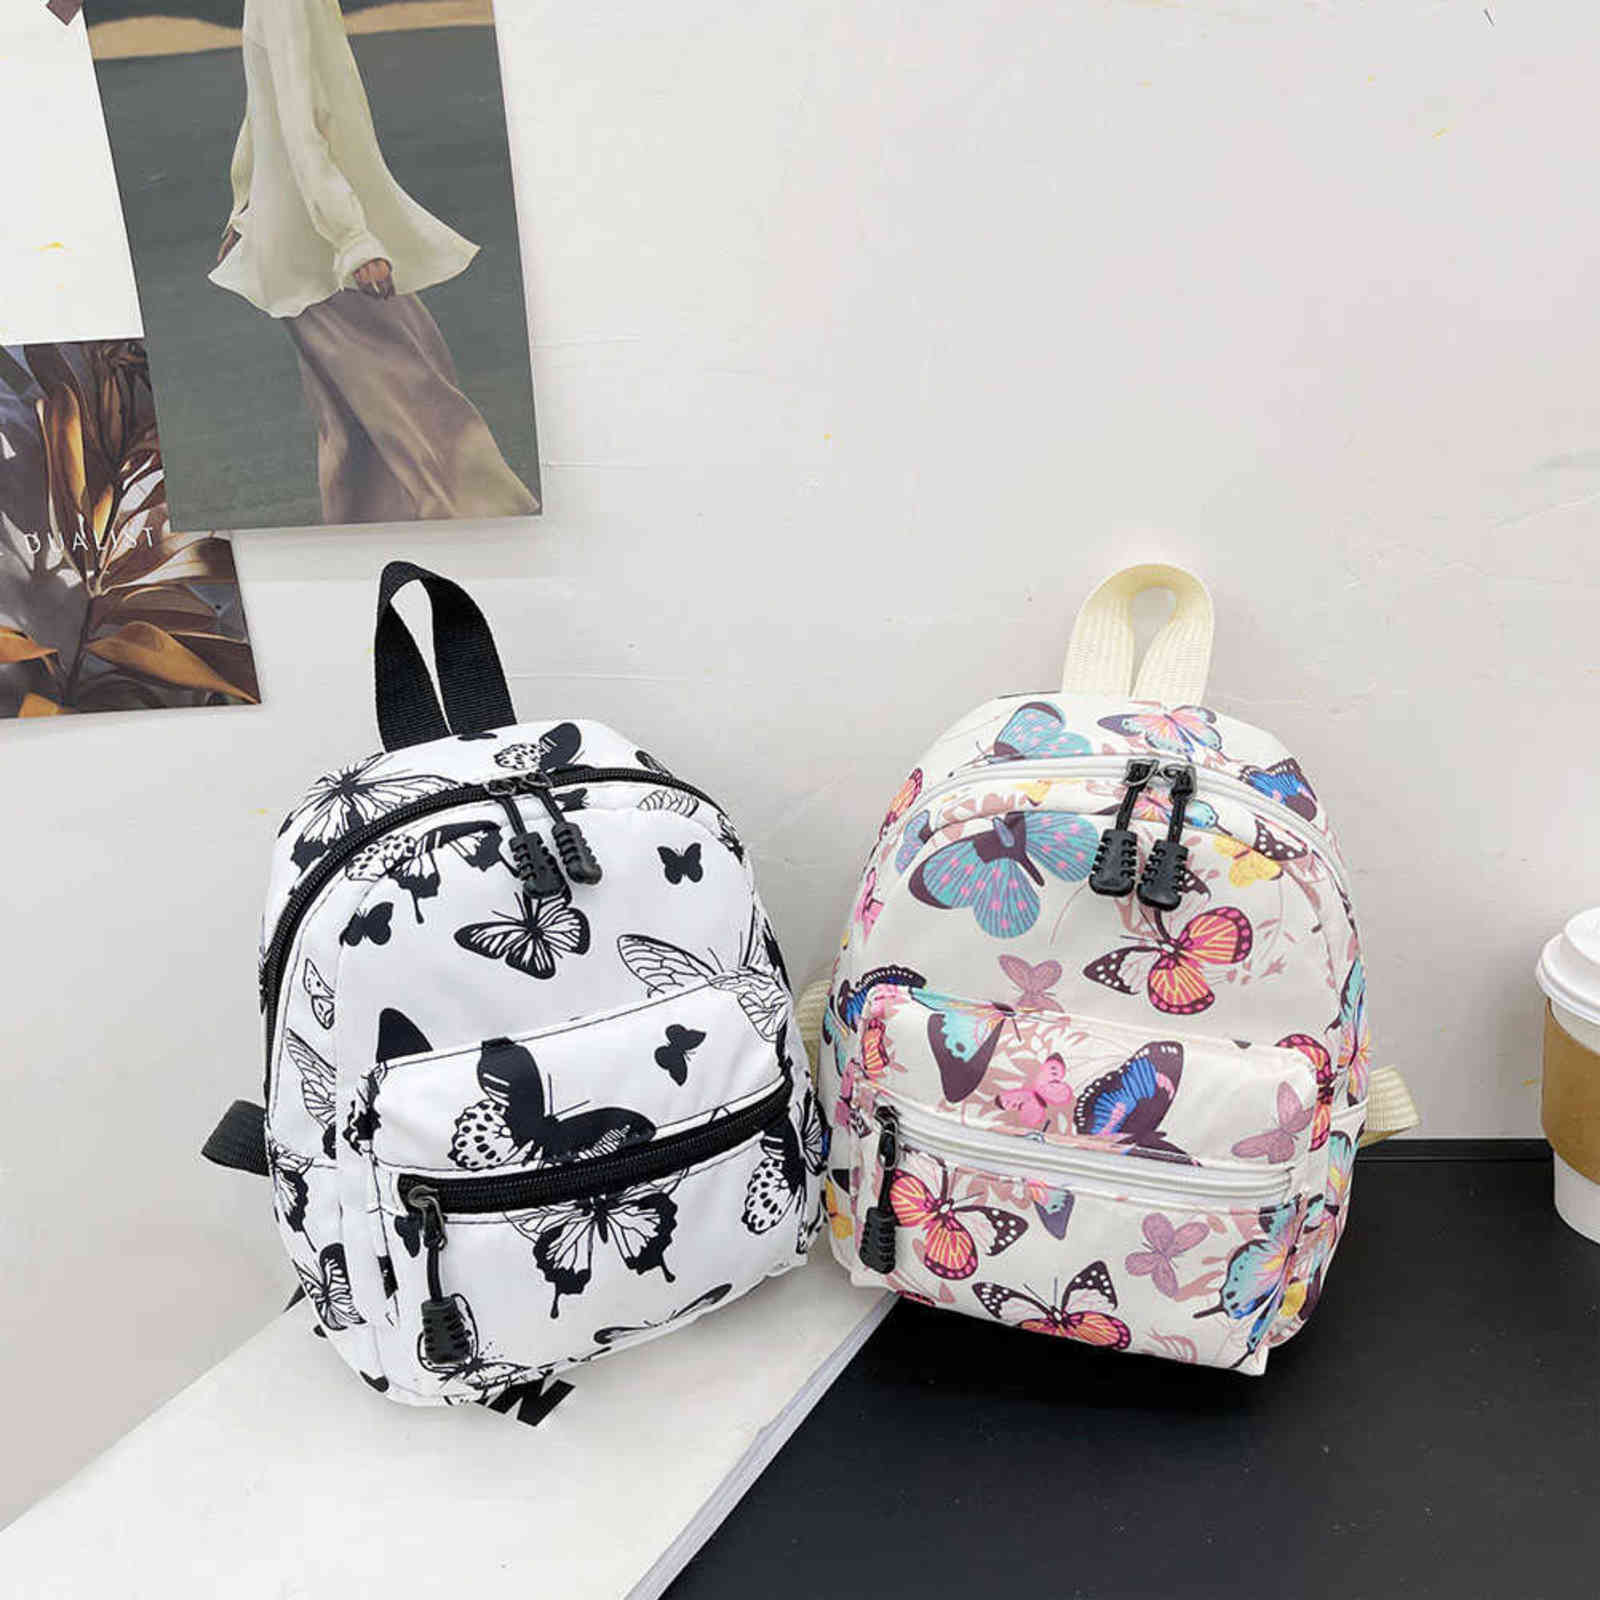 

Backpack style Animal Printing Mini Women's Backpacks Trend Nylon Female Bag Small School Bags White Feminina Rucksack For Teen Girls 1119, Cow pattern